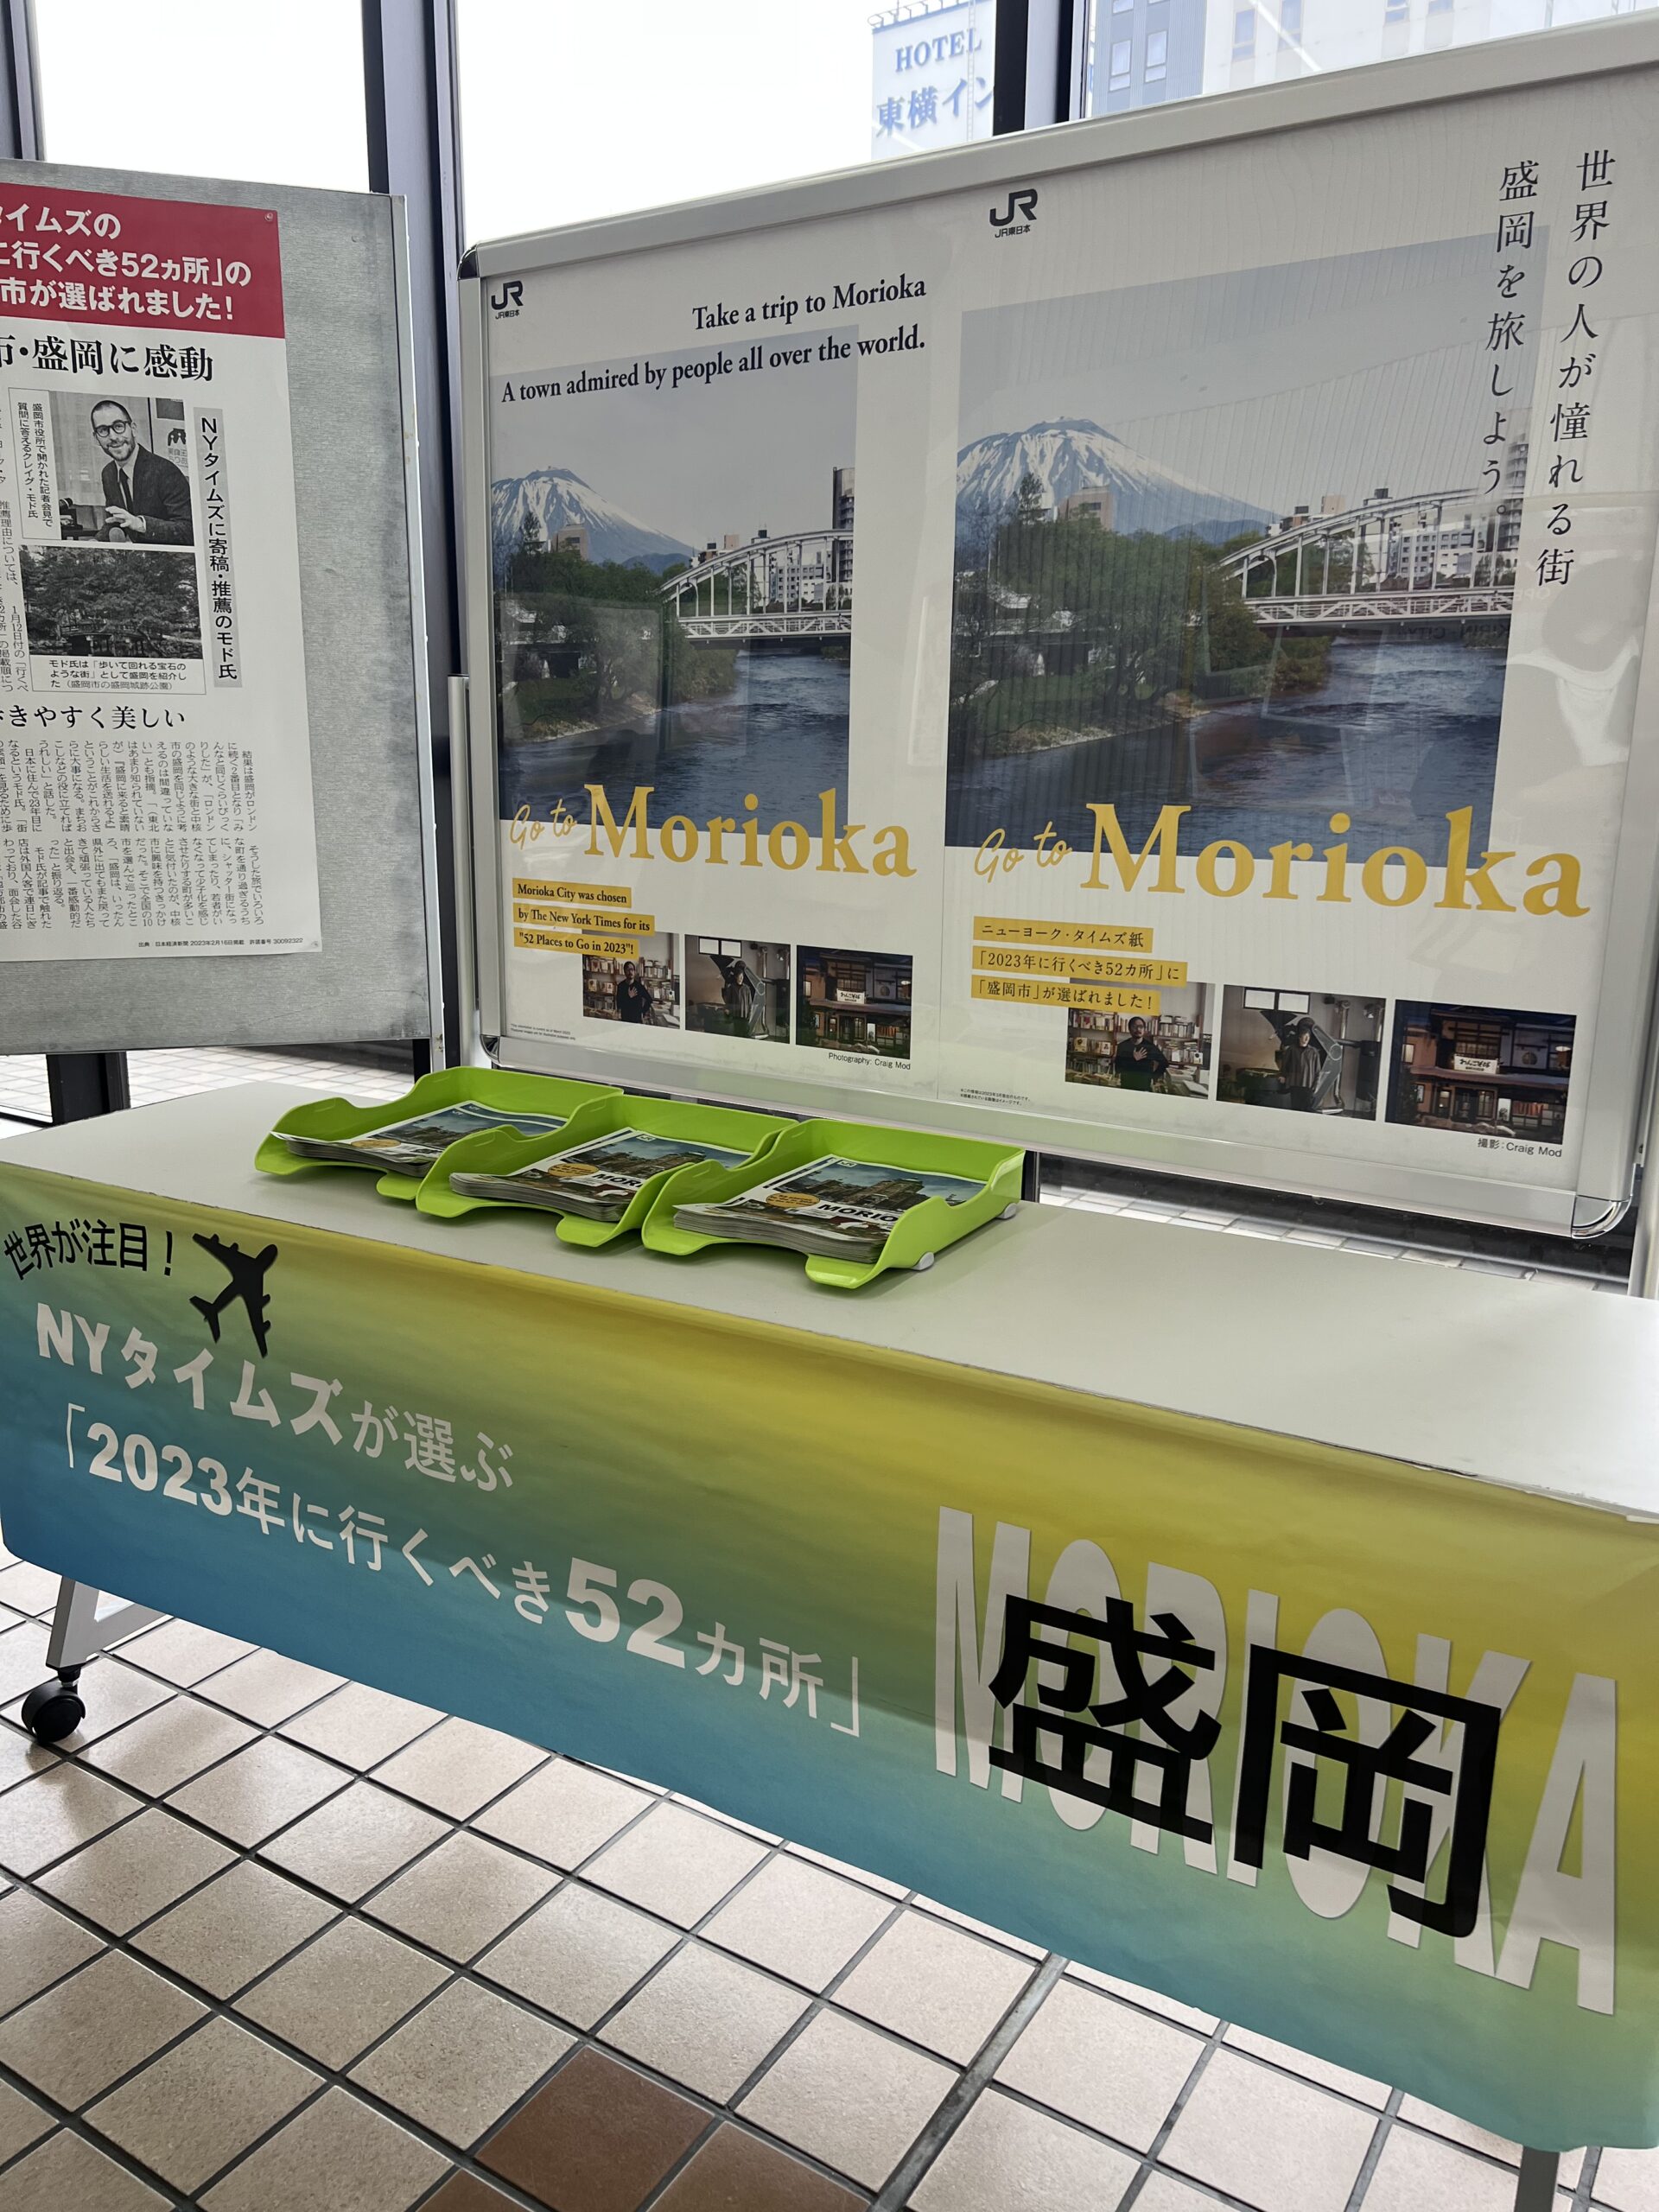 morioka station